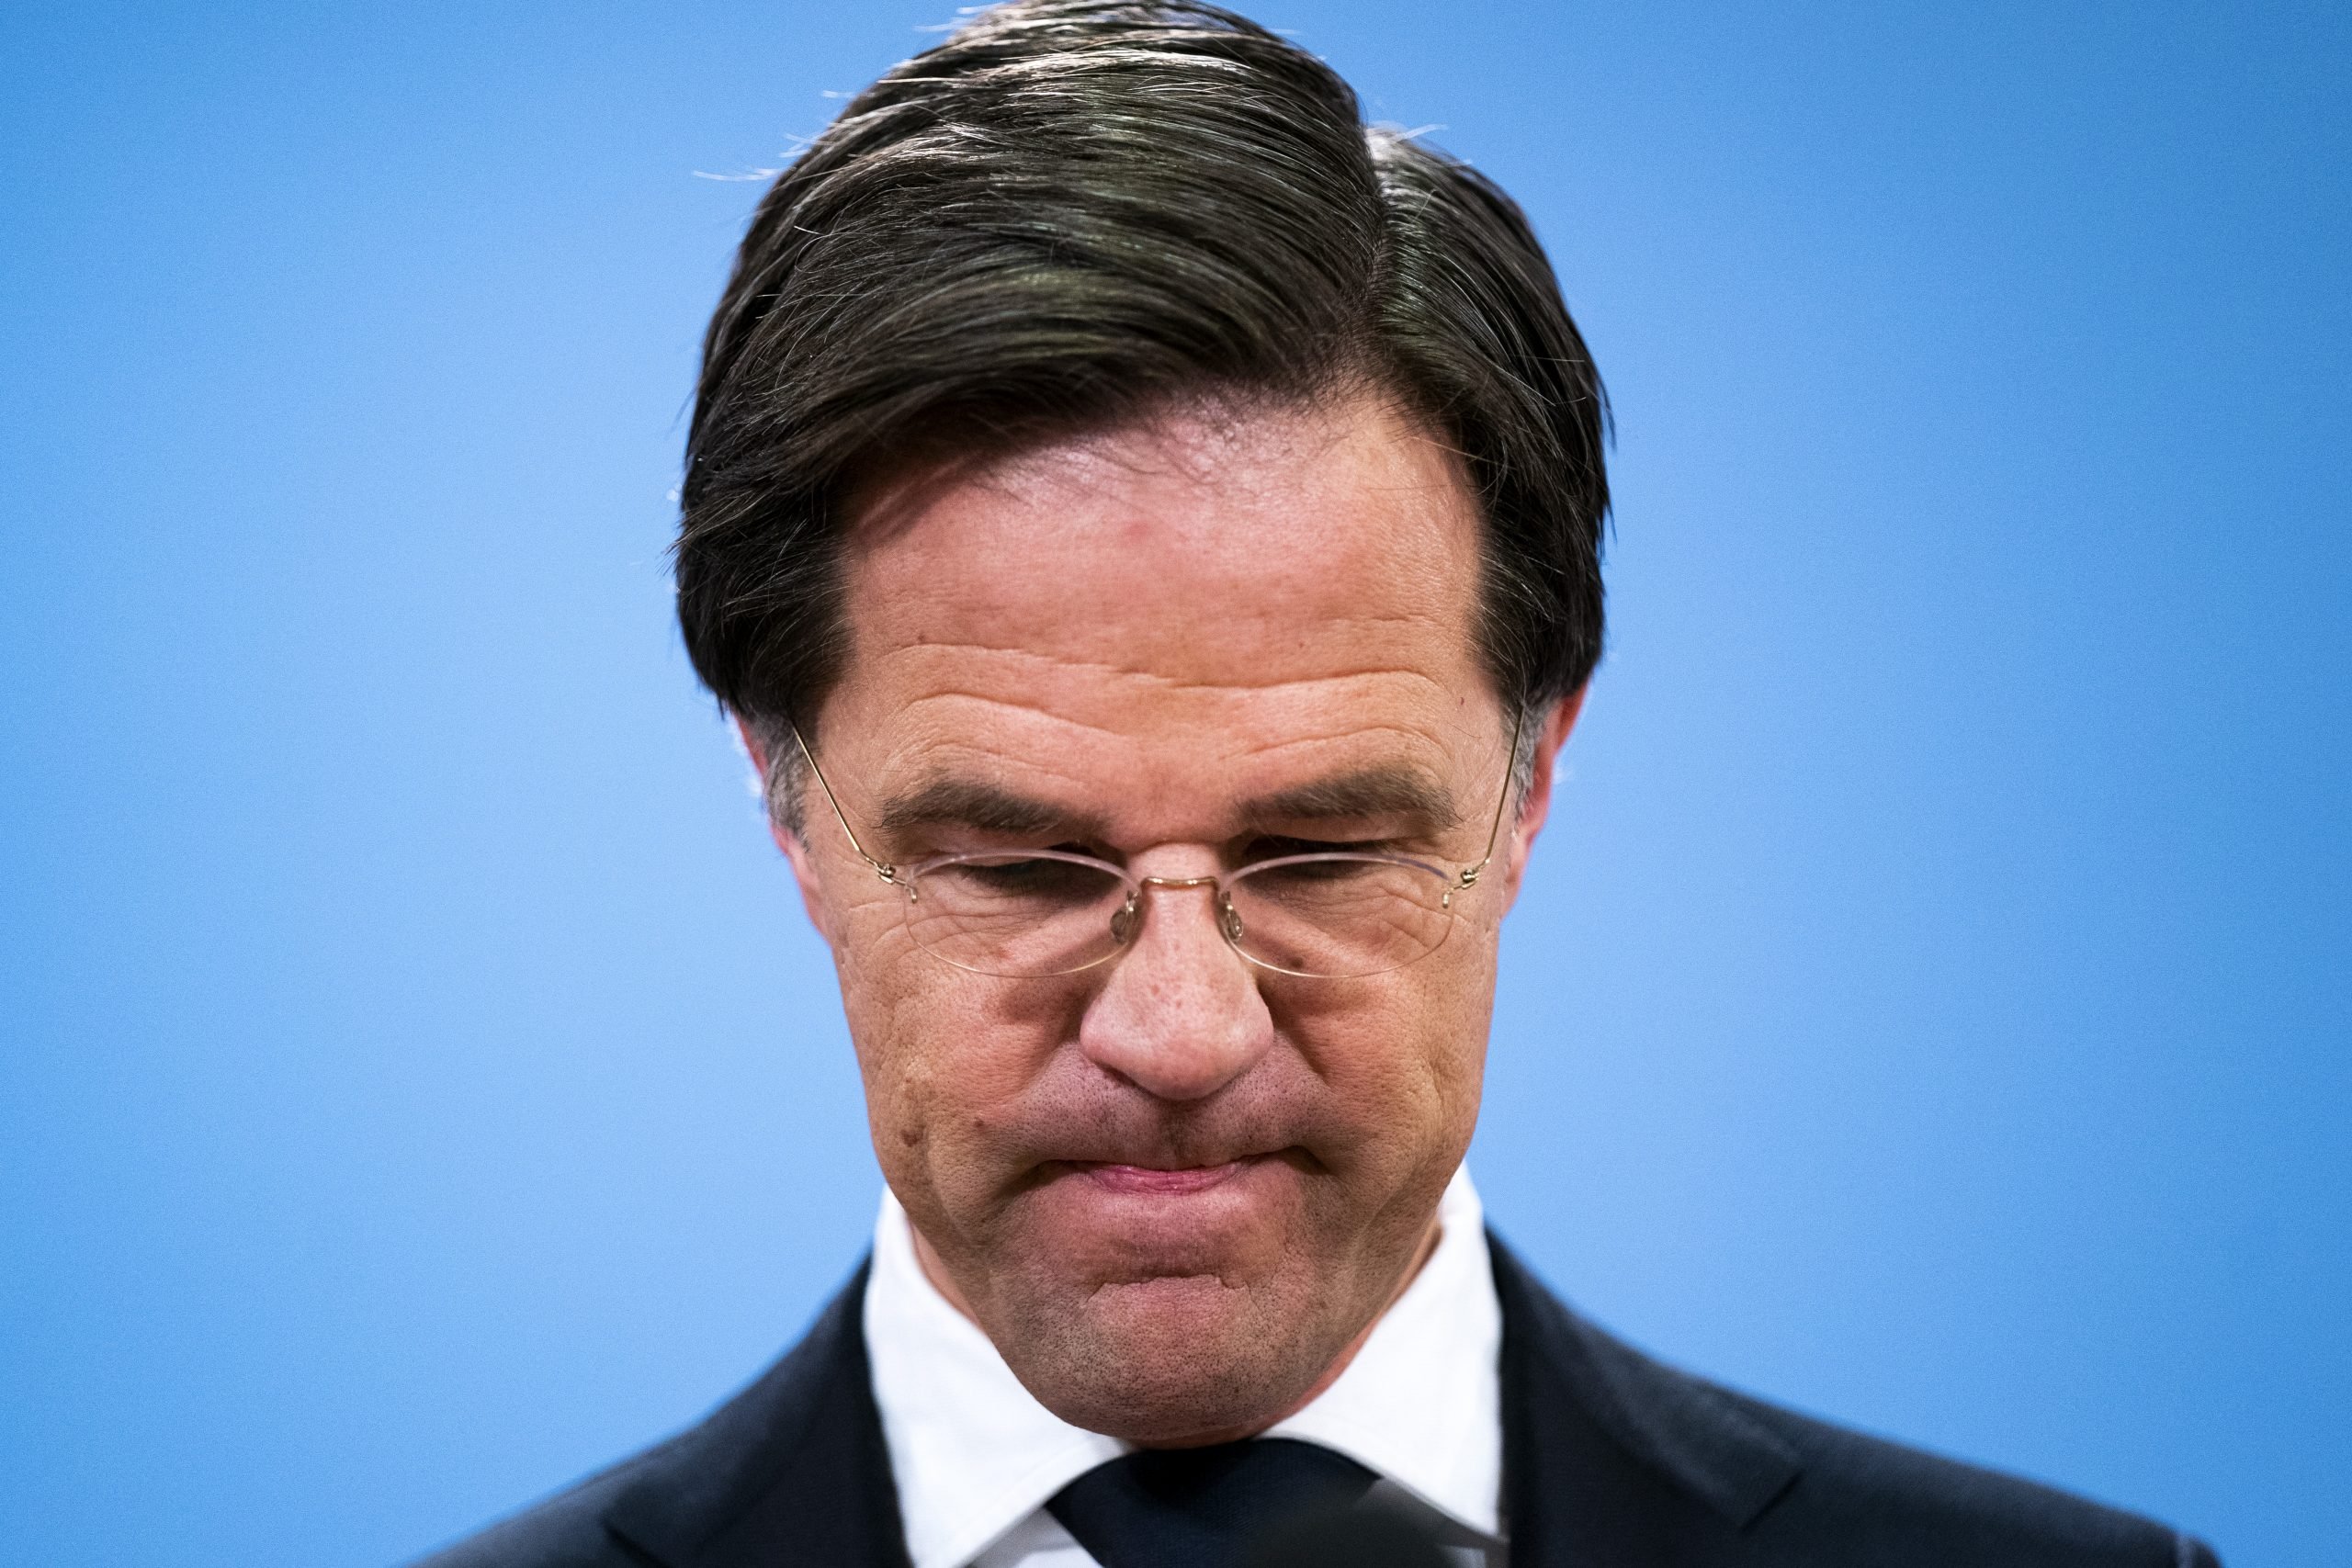 Mark Rutte tijdens de persconferentie in januari 2021 waarin hij een toelichting gaf op het aftreden van zijn kabinet vanwege de toeslagenaffaire. Foto: ANP/Bart Maat